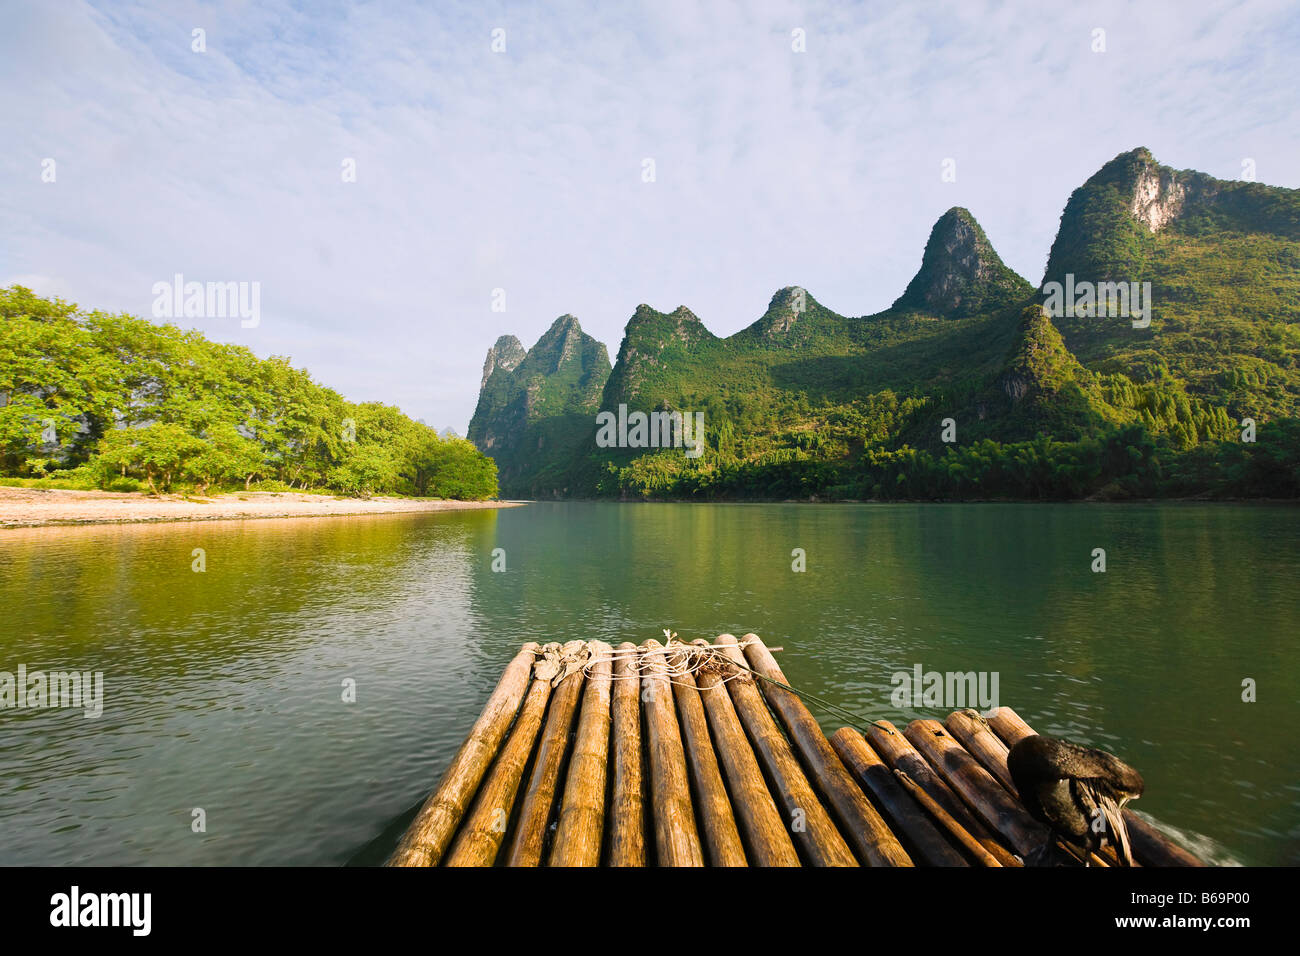 En radeau de bambou dans une rivière avec une plage de colline en arrière-plan, XingPing, Yangshuo, Guangxi Province, China Banque D'Images